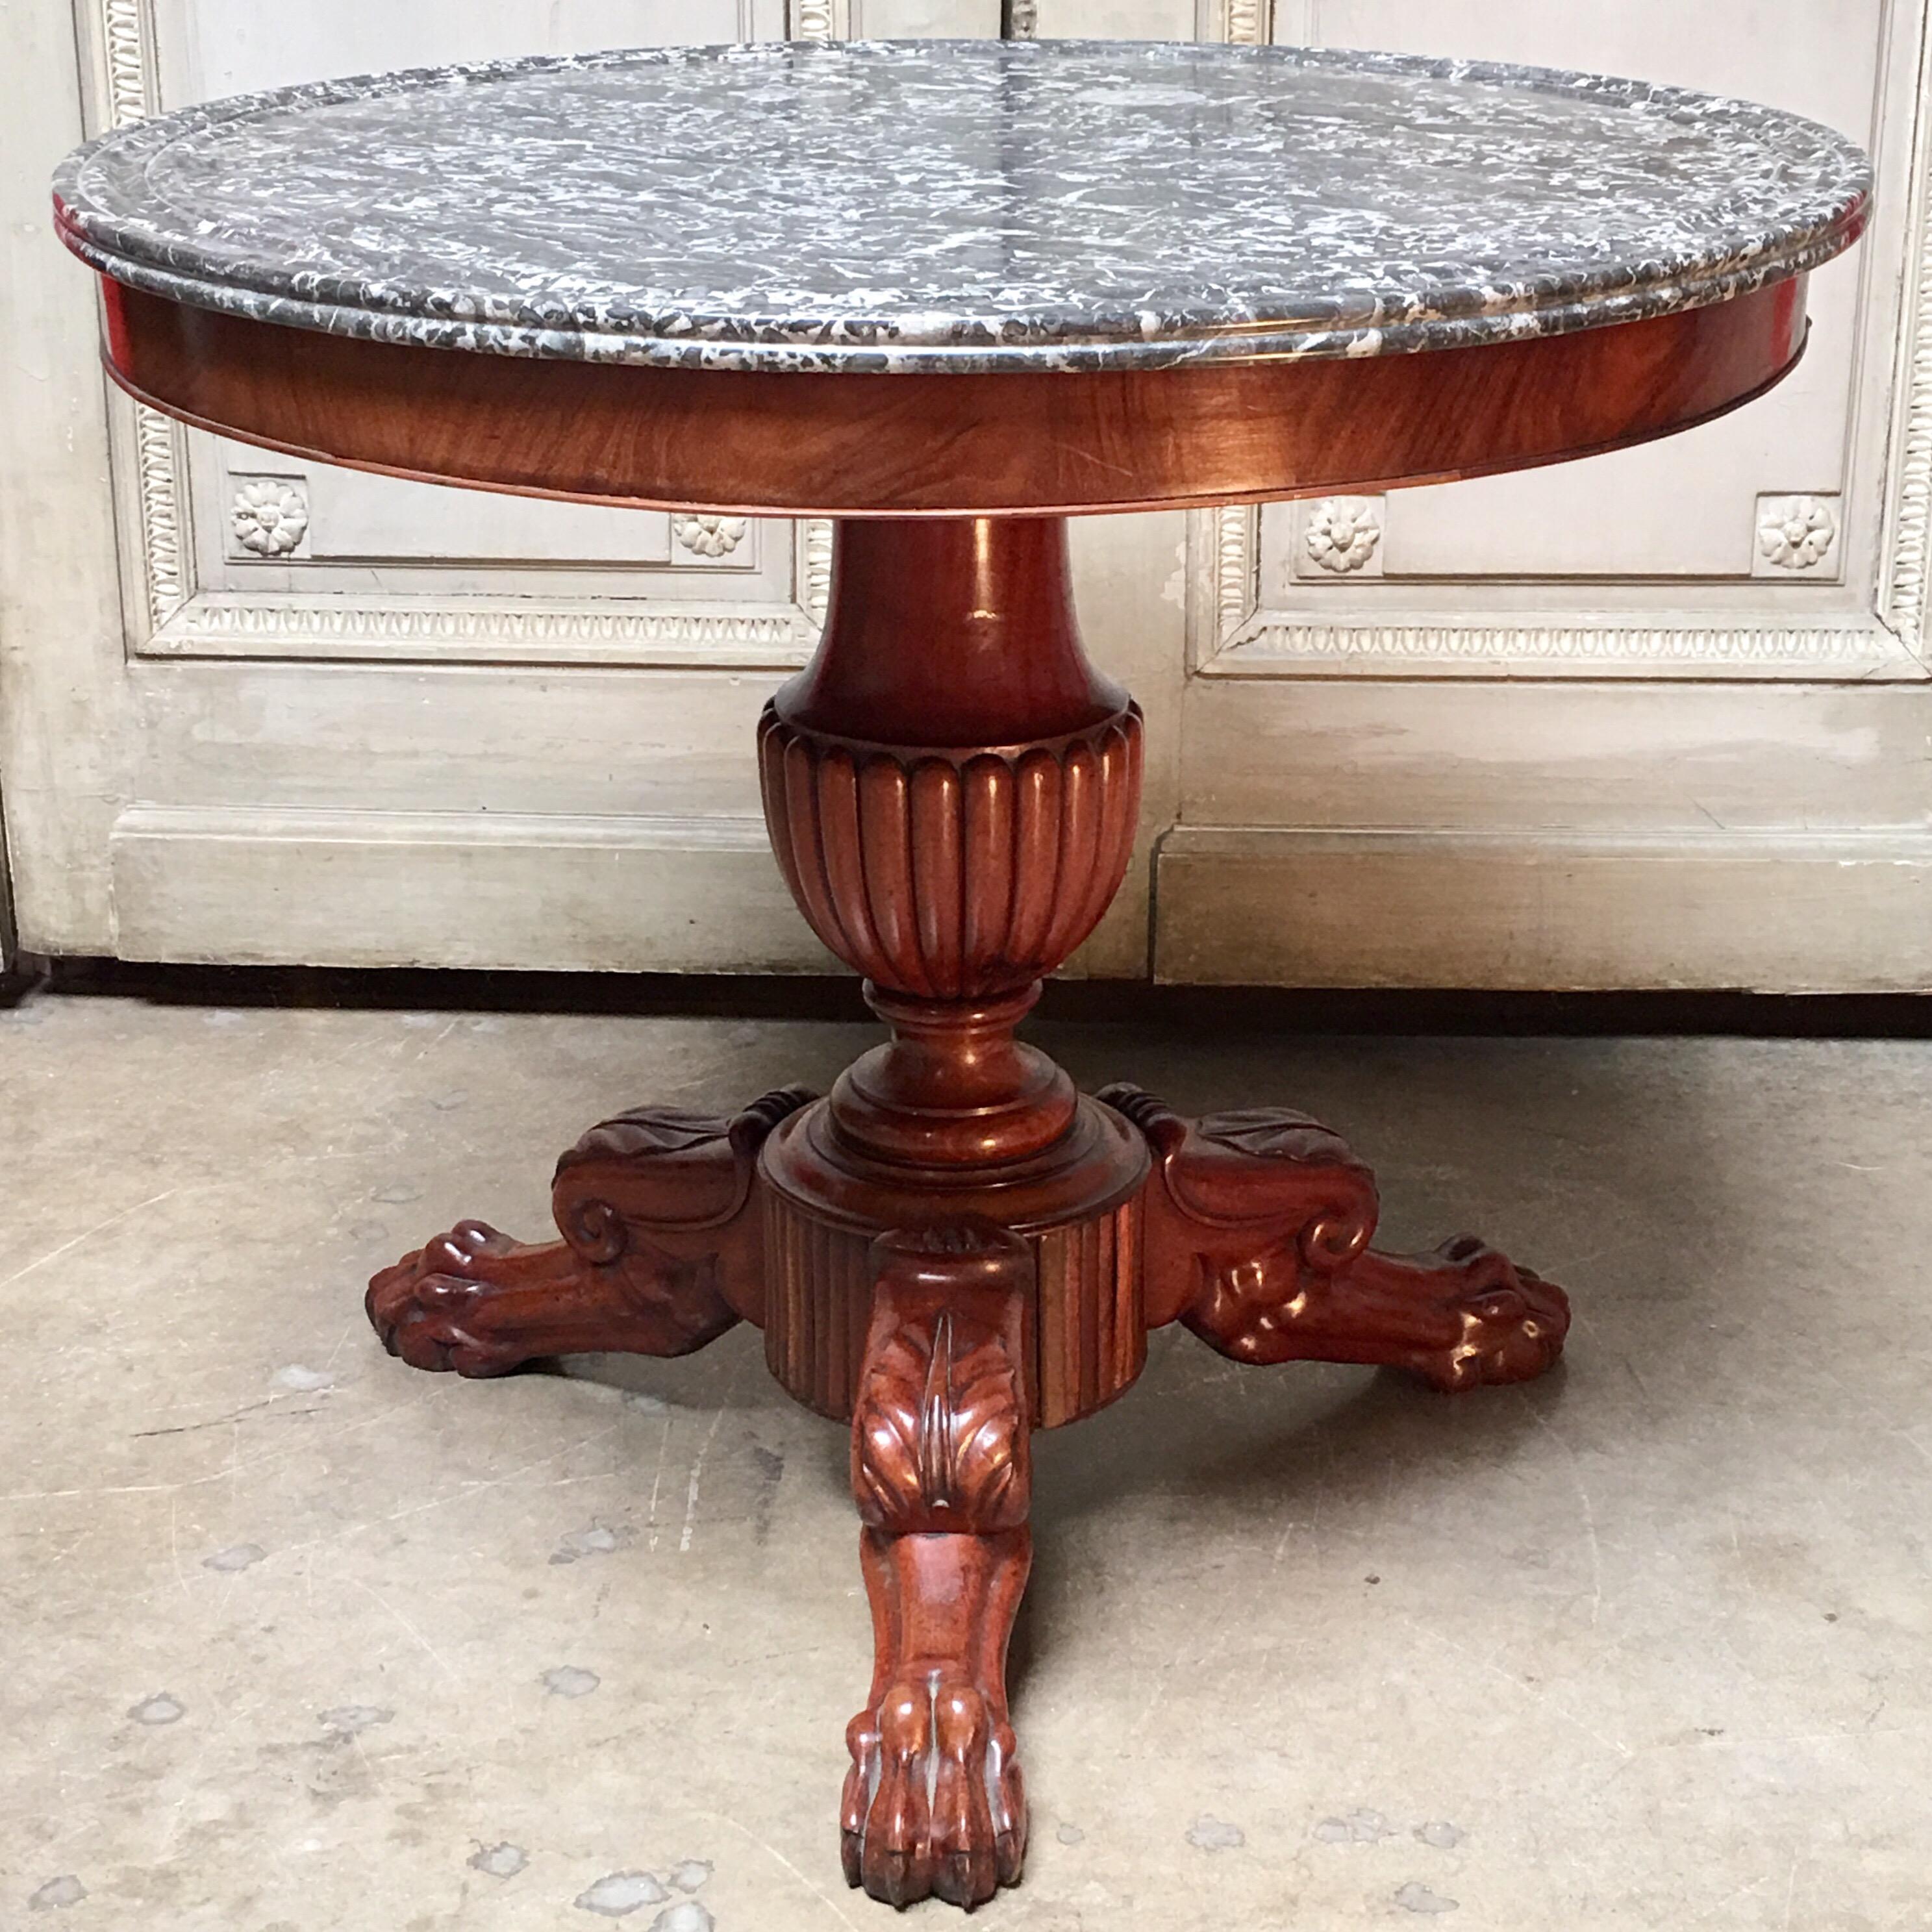 Ein französischer Mahagoni-Tisch aus dem frühen 19. Jahrhundert von Charles X. mit einer Platte aus dunkelgrauem und weiß geädertem Marmor. Das ist hübsch,  der skulpturale Tisch hat einen geschnitzten, urnenförmigen Sockel mit Akanthusblatt und